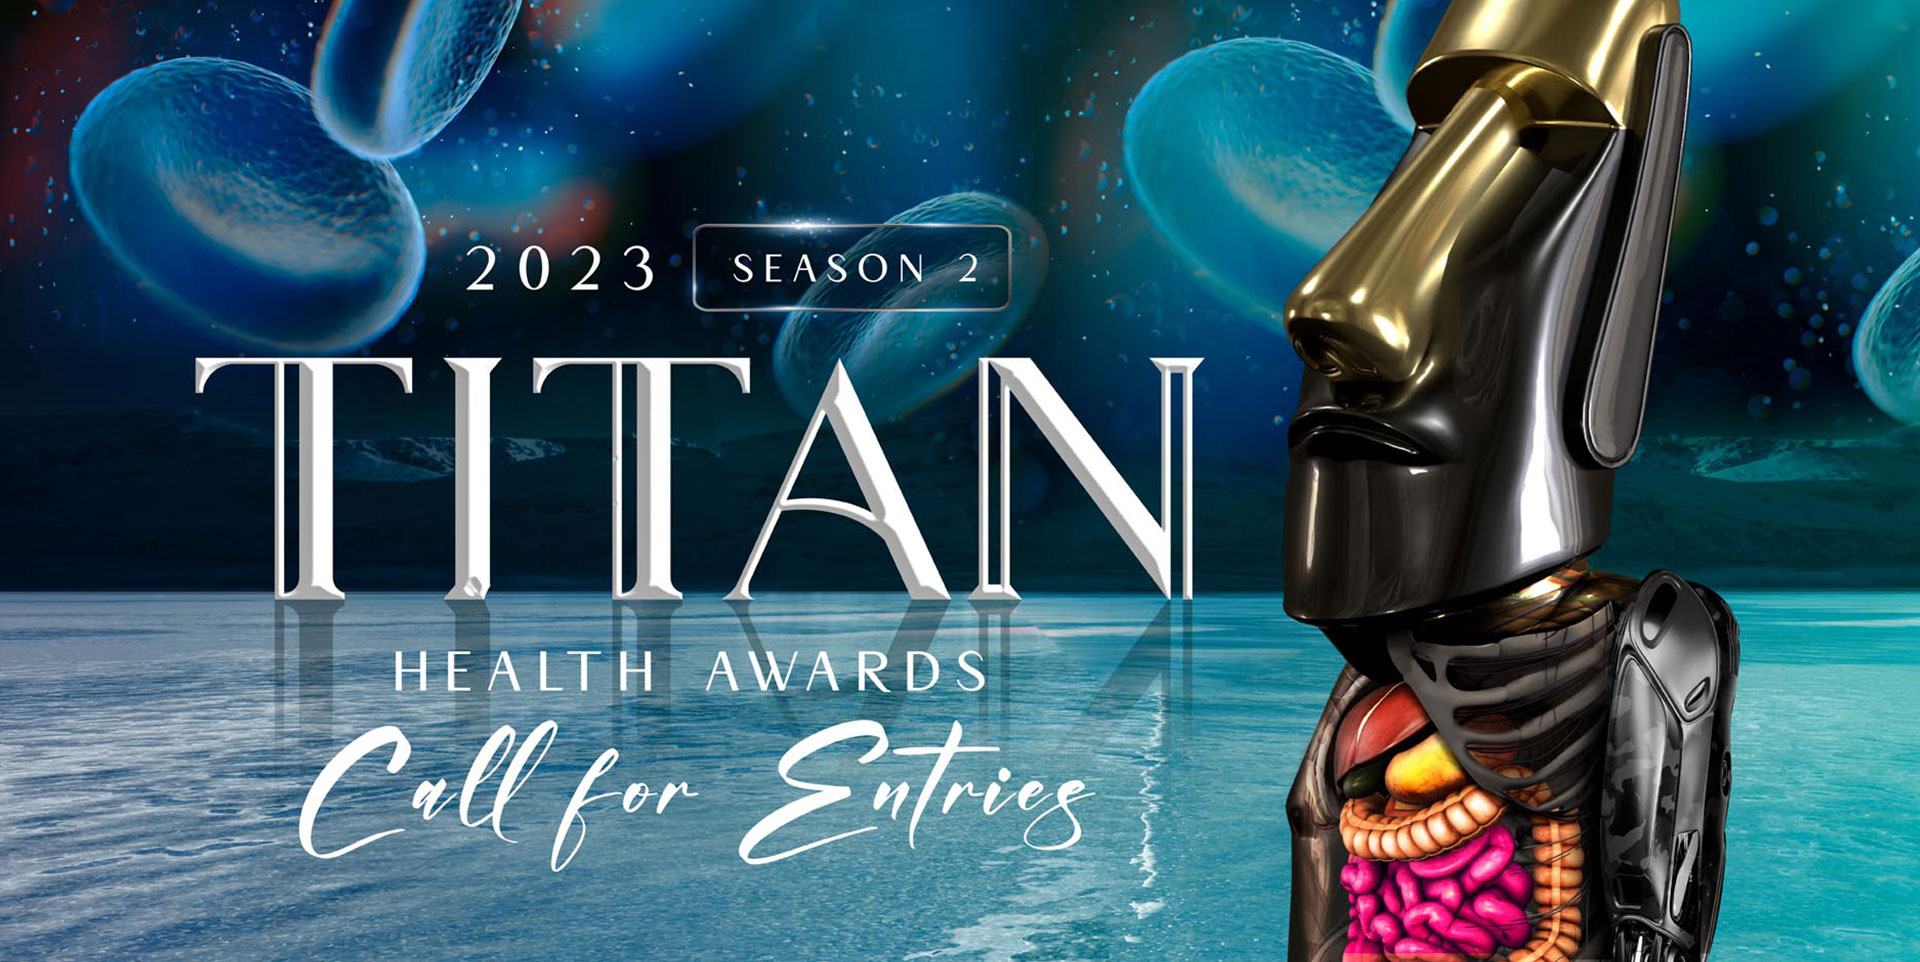 TITAN Health Awards 2023: Season 2 is now open for entries!